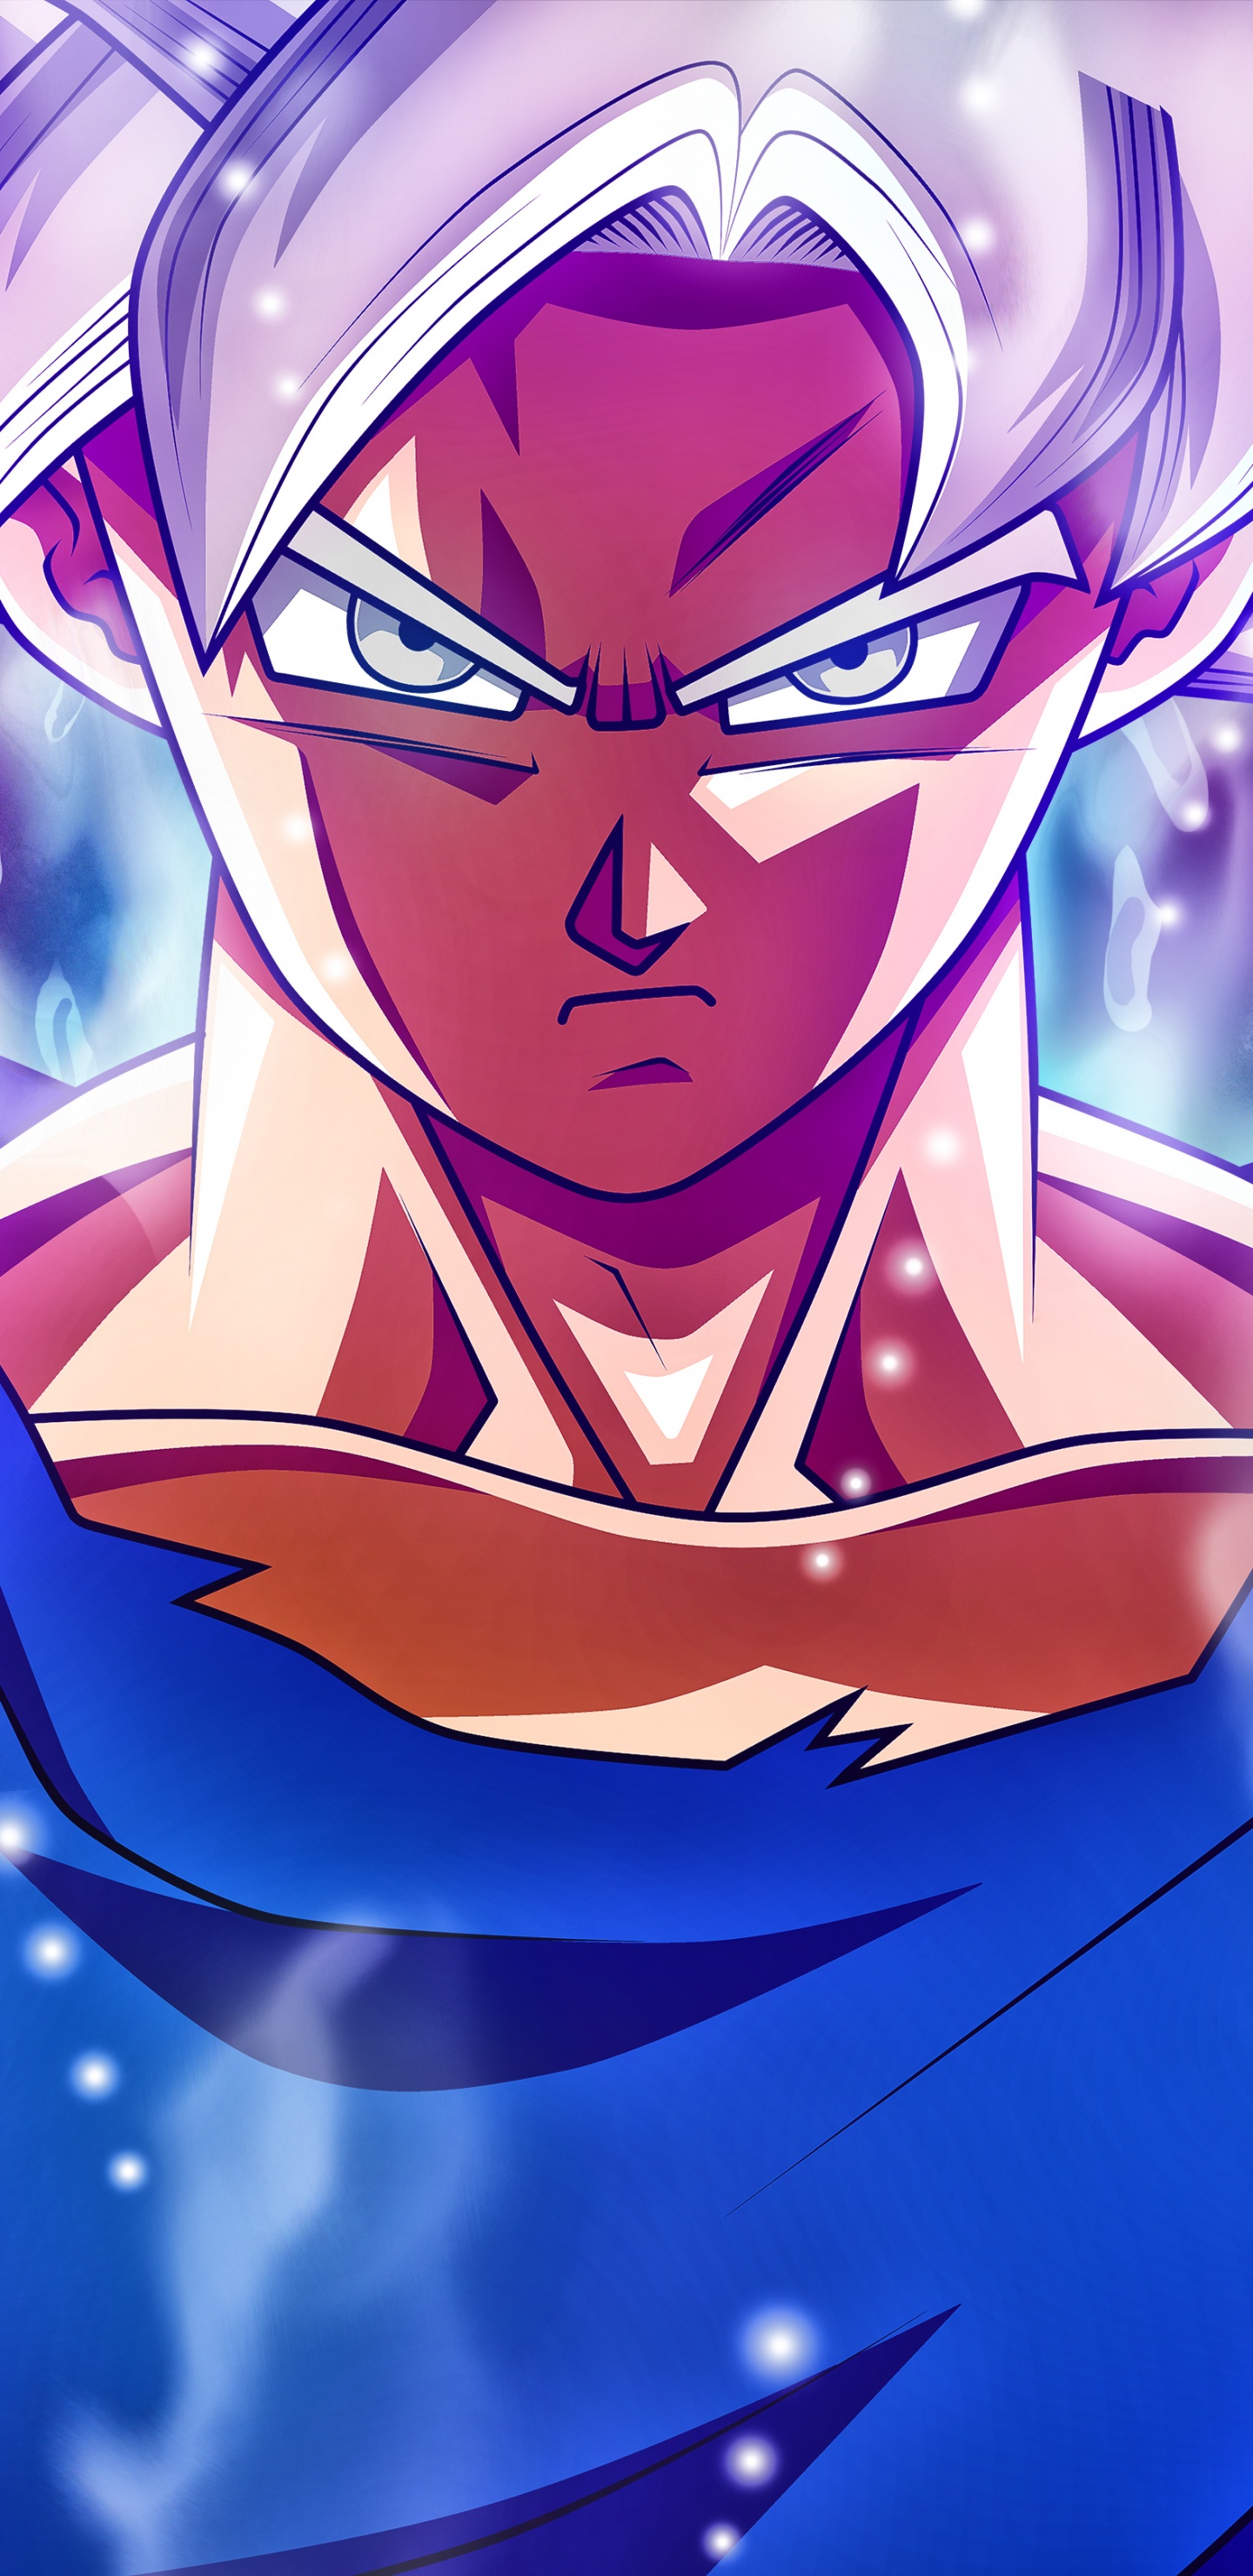 Blauhaariger Männlicher Anime-Charakter. Wallpaper in 1440x2960 Resolution